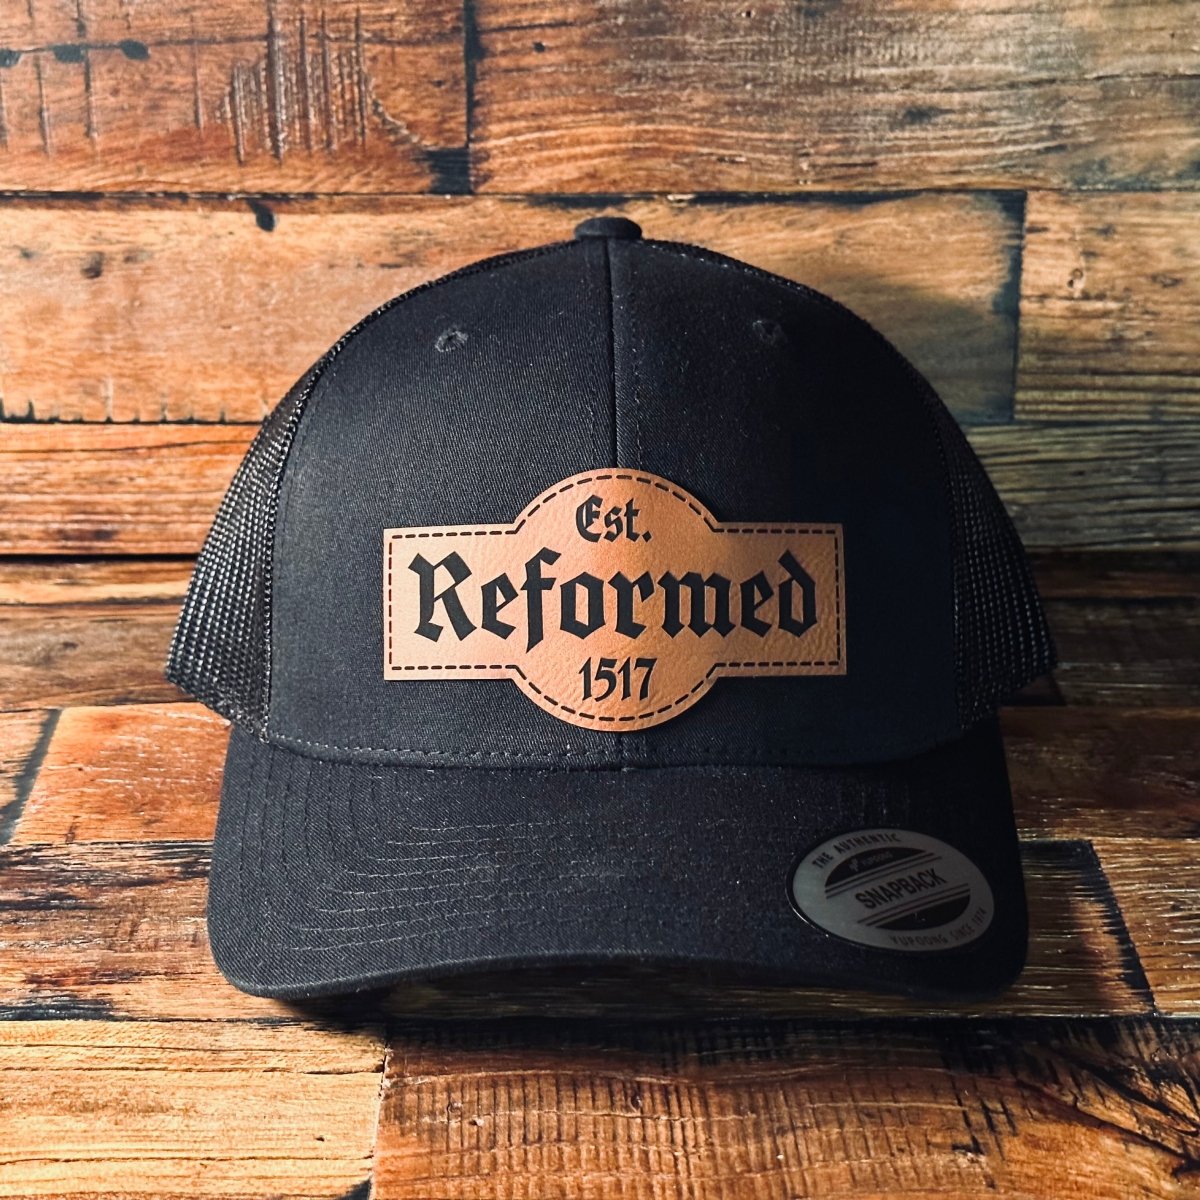 Hat - Reformed Est. 1517 - Patch Hat - The Reformed Sage - #reformed# - #reformed_gifts# - #christian_gifts#